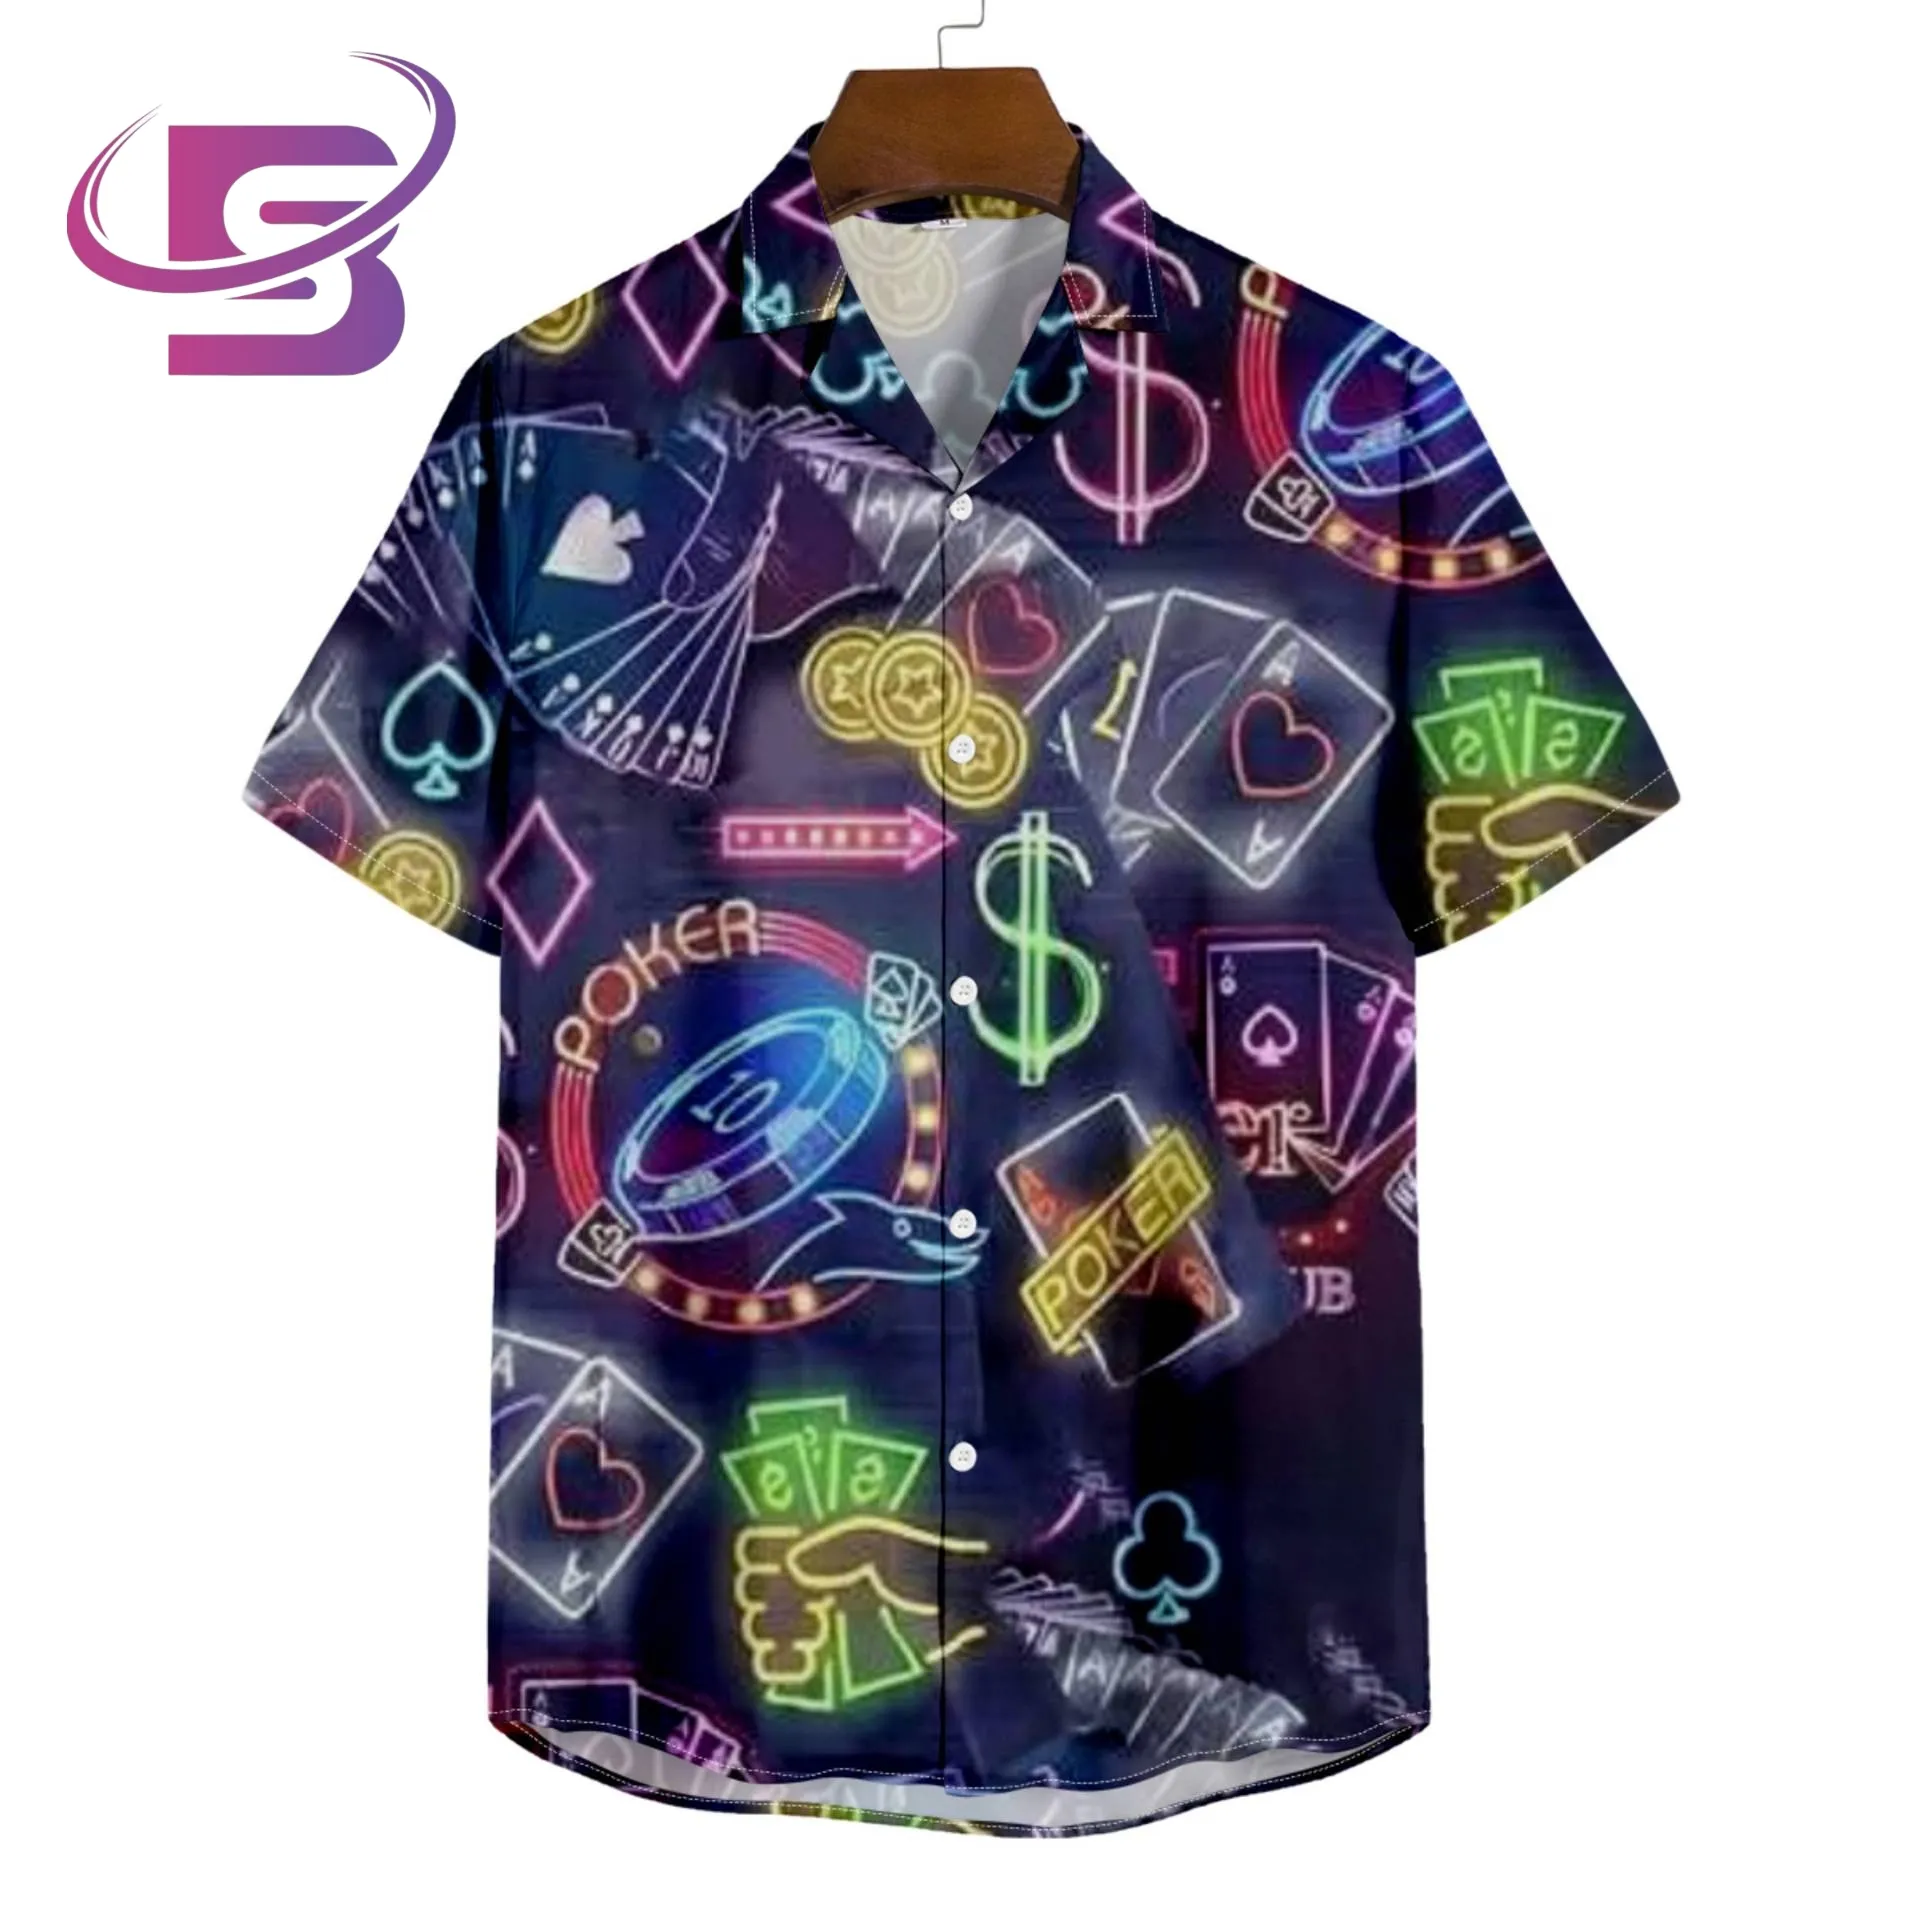 Großhandels preis Sommerkleid ung lässig Digitaldruck Button Up Kurzarm Herren Beach Aloha Hawaiian Shirt